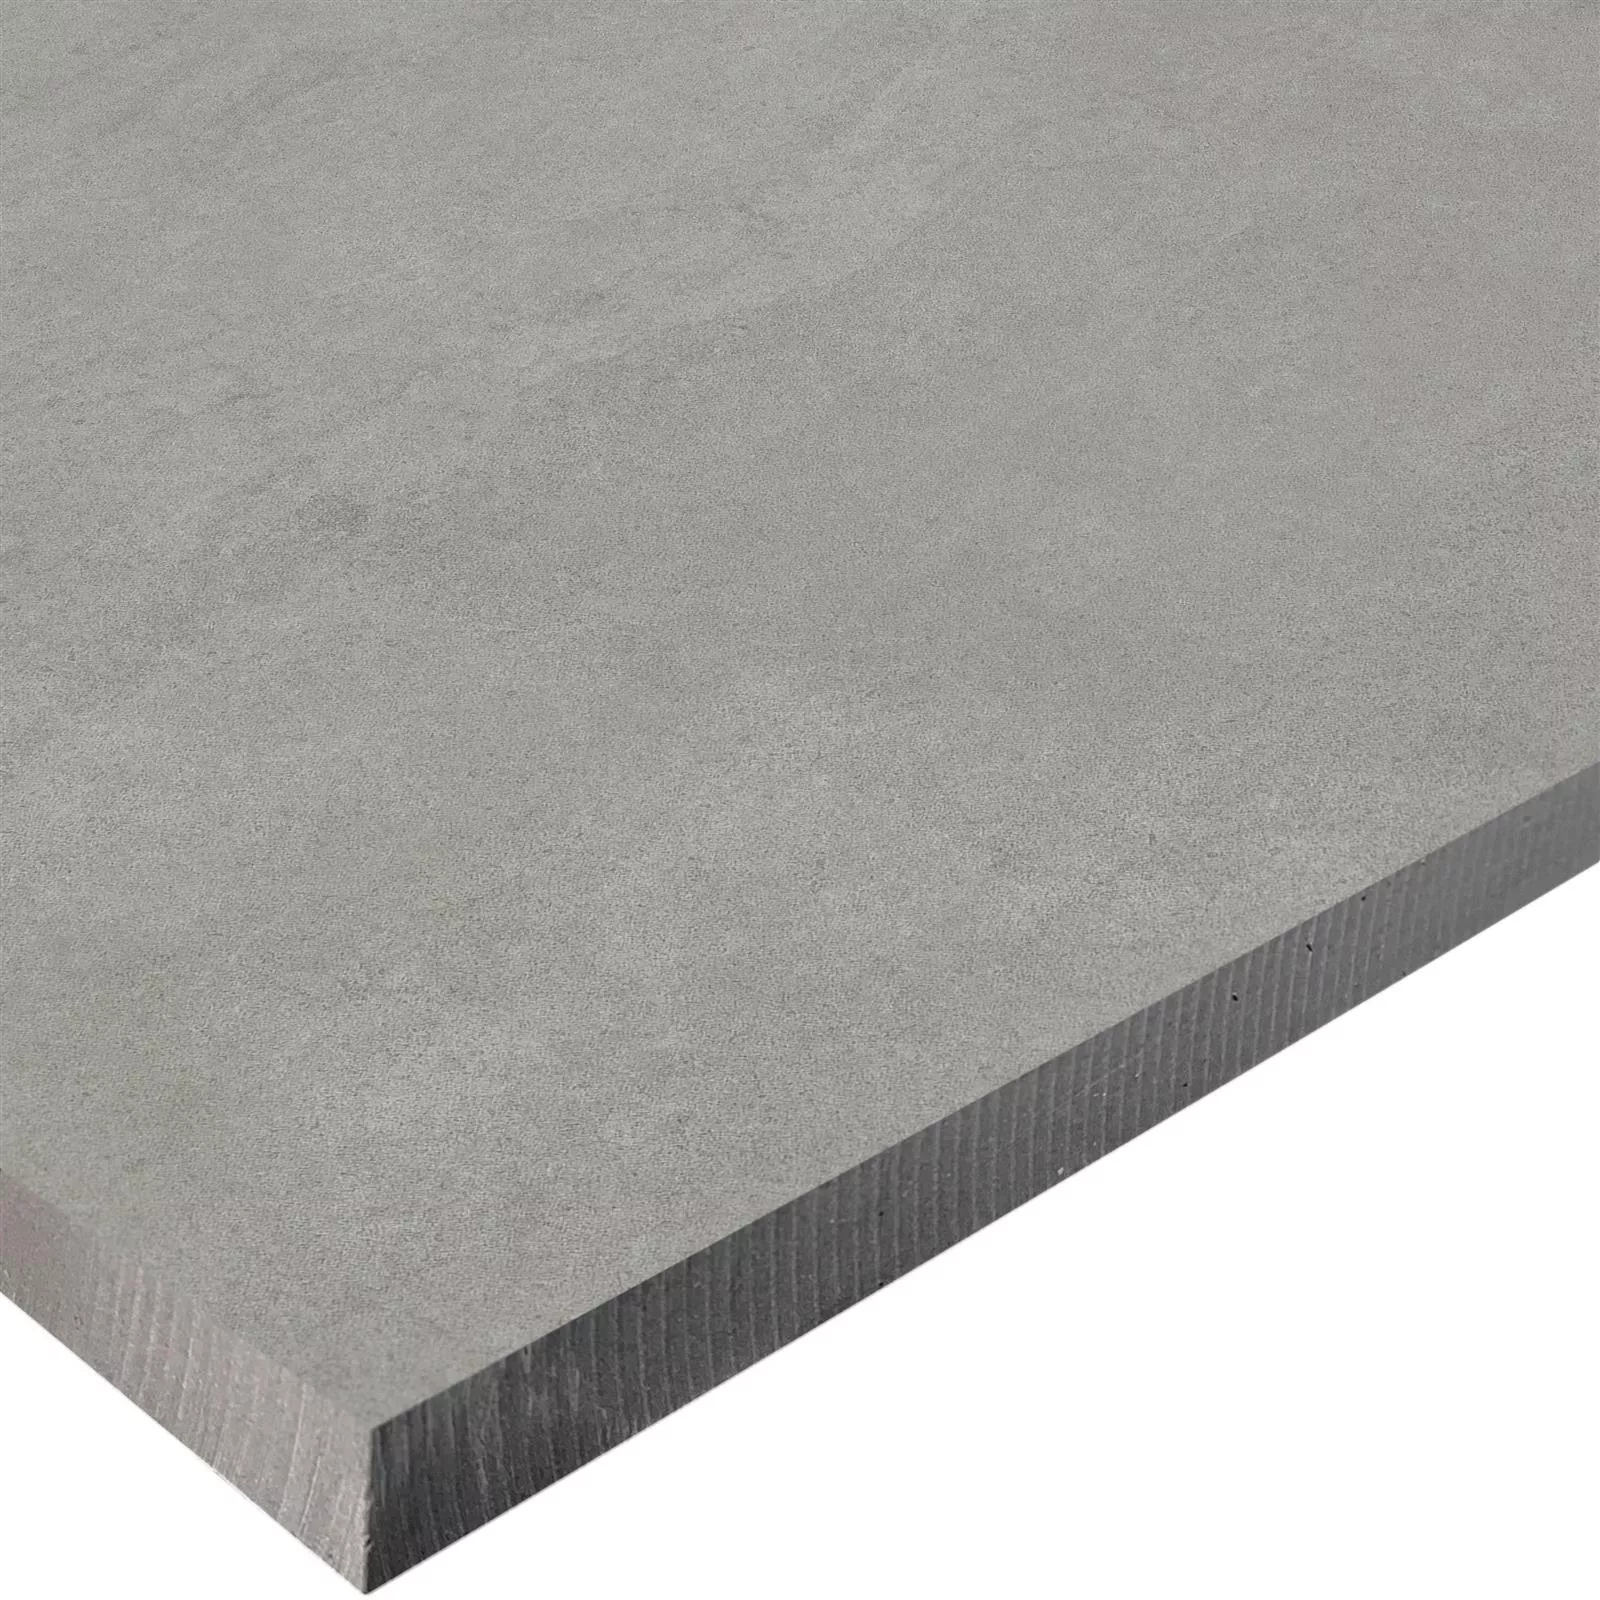 Dalles De Terrasse Optique De Ciment Newland Gris 60x60x3cm